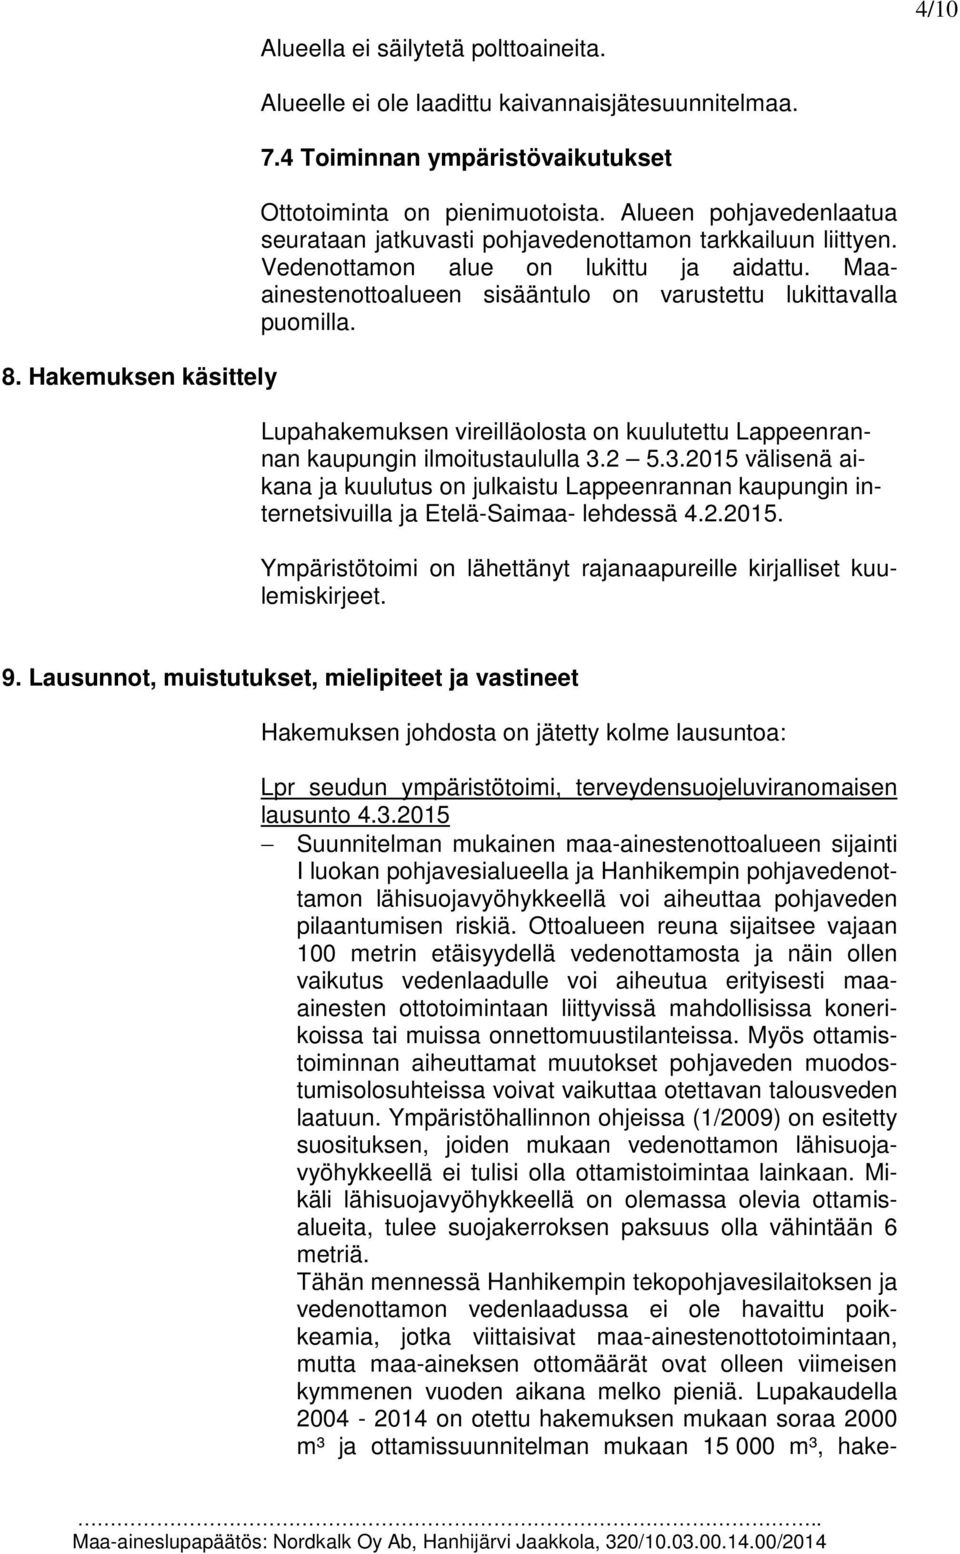 Lupahakemuksen vireilläolosta on kuulutettu Lappeenrannan kaupungin ilmoitustaululla 3.